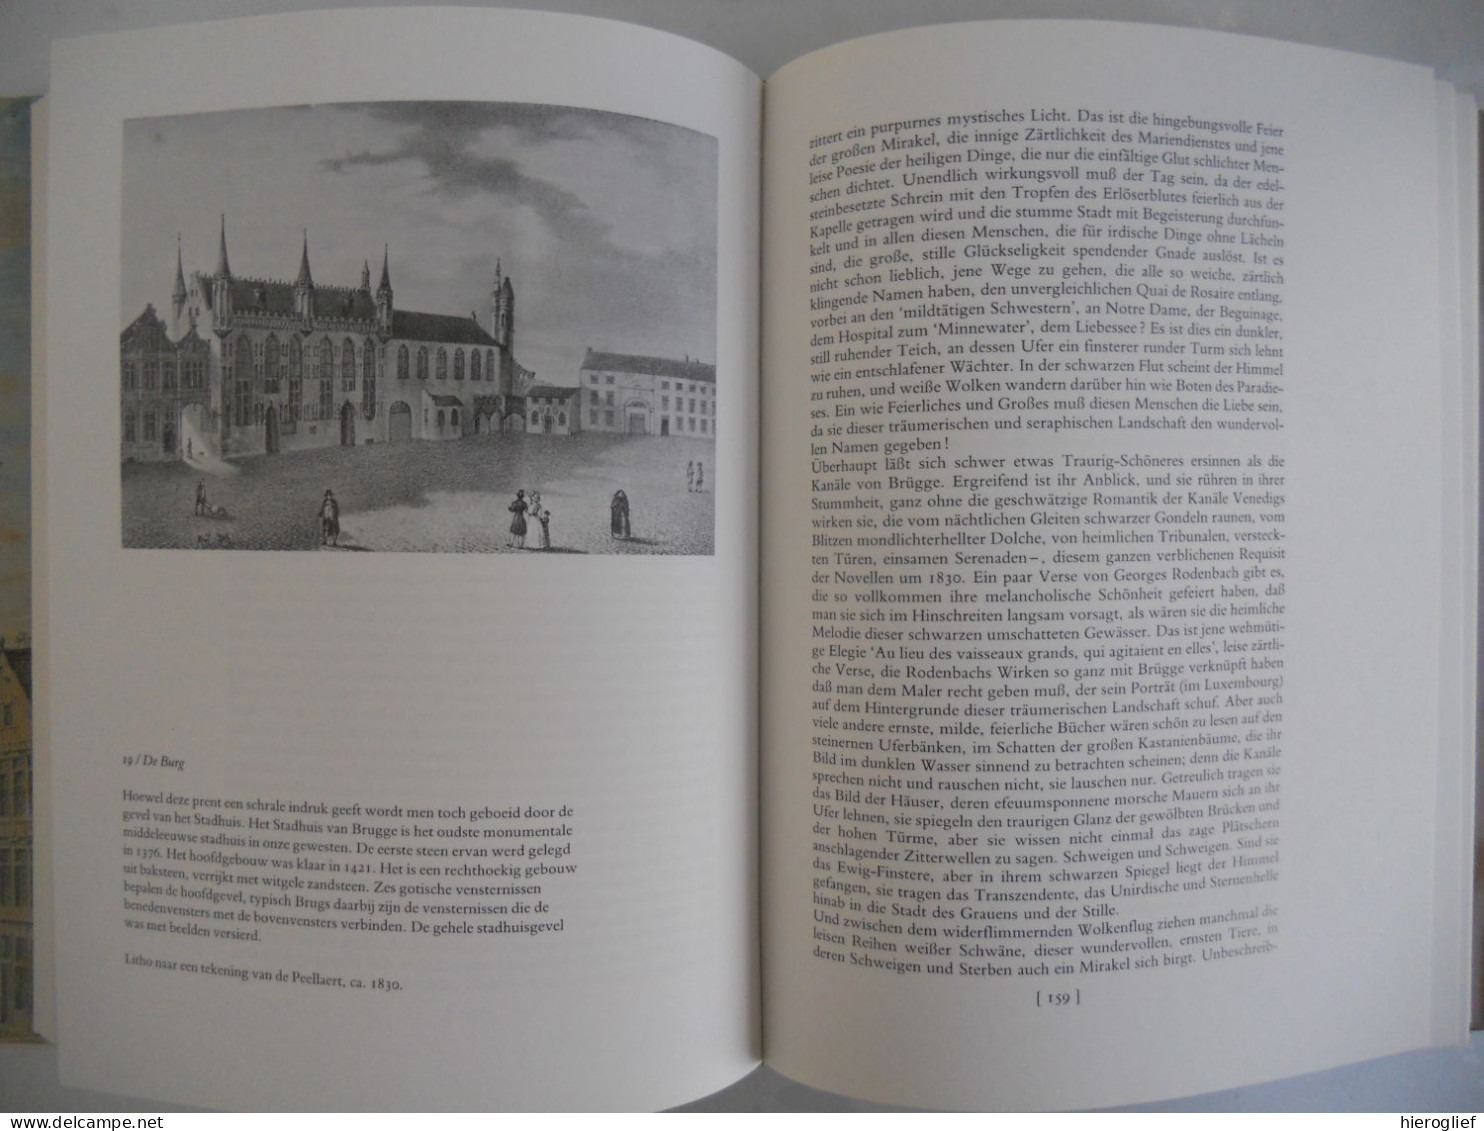 BRUGGE BESCHREVEN hoe een stad in tekst verschijnt door Fernand Bonneure brugge in literatuur en geschiedschrijving